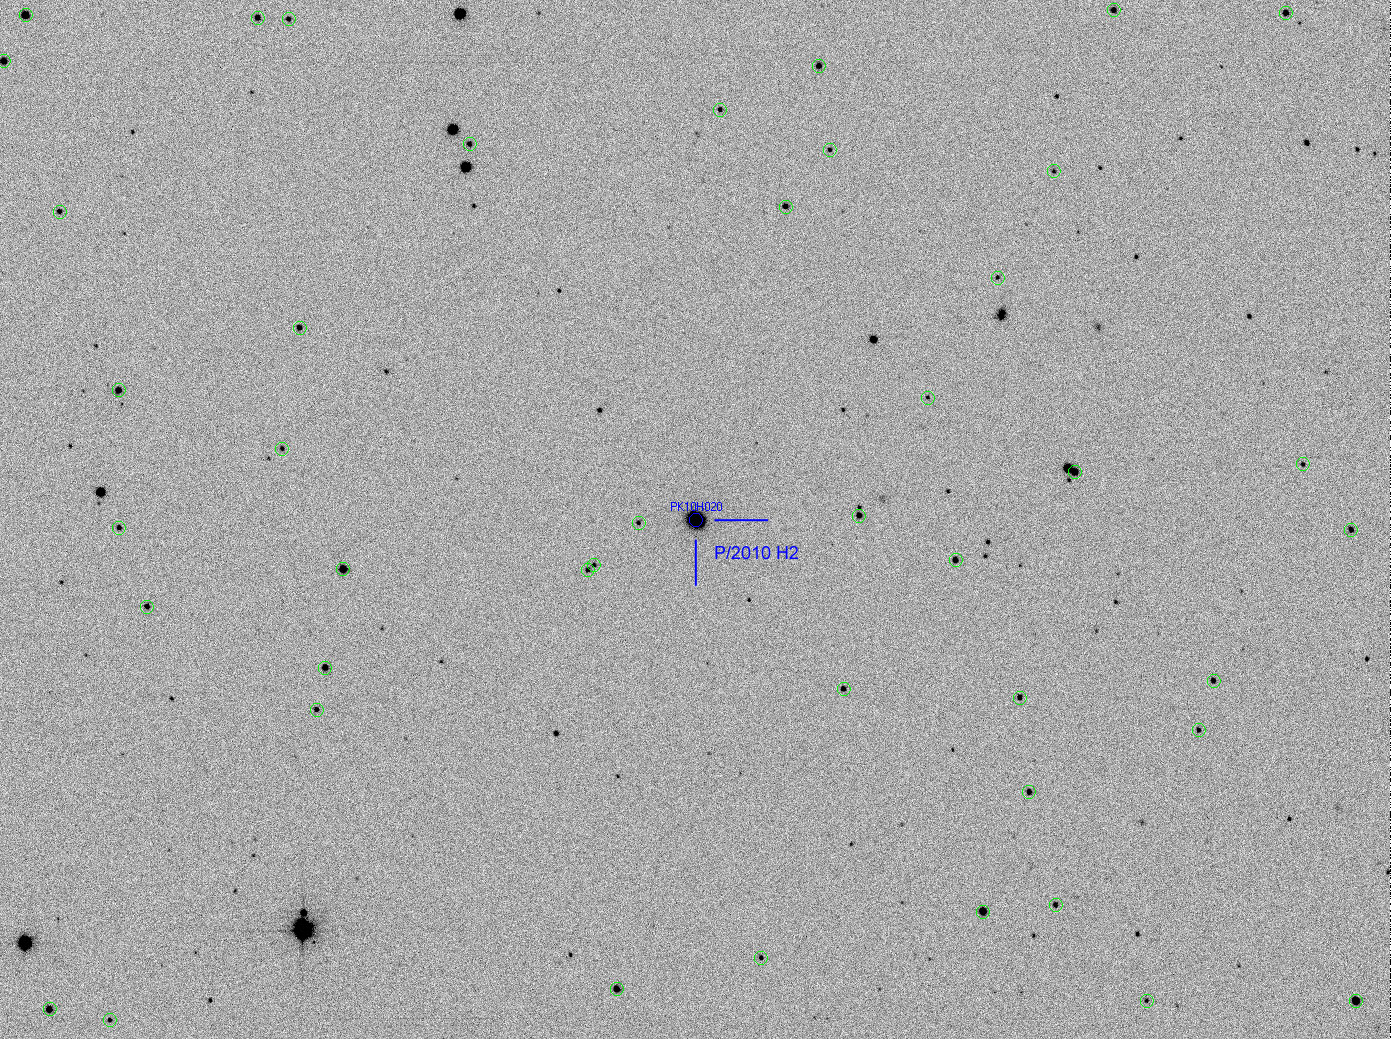 Komet P/2010 H2